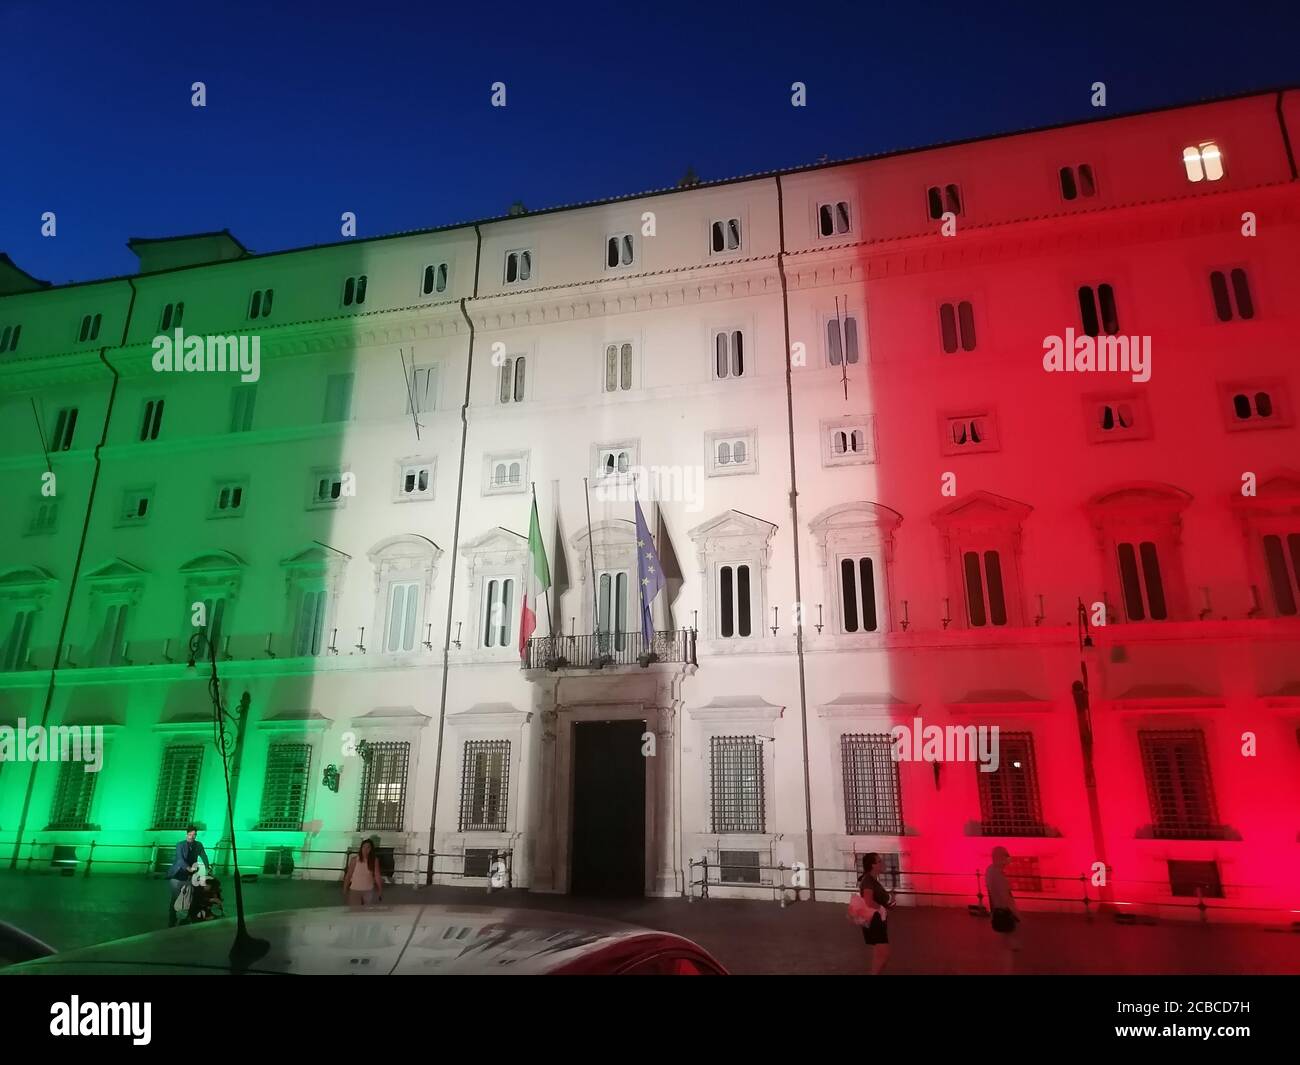 Roma, Italia - 12 agosto 2020: Emergenza Coronavirus in Italia, Palazzo Chigi, sede del governo italiano, illuminata con i colori della bandiera italiana Stockfoto